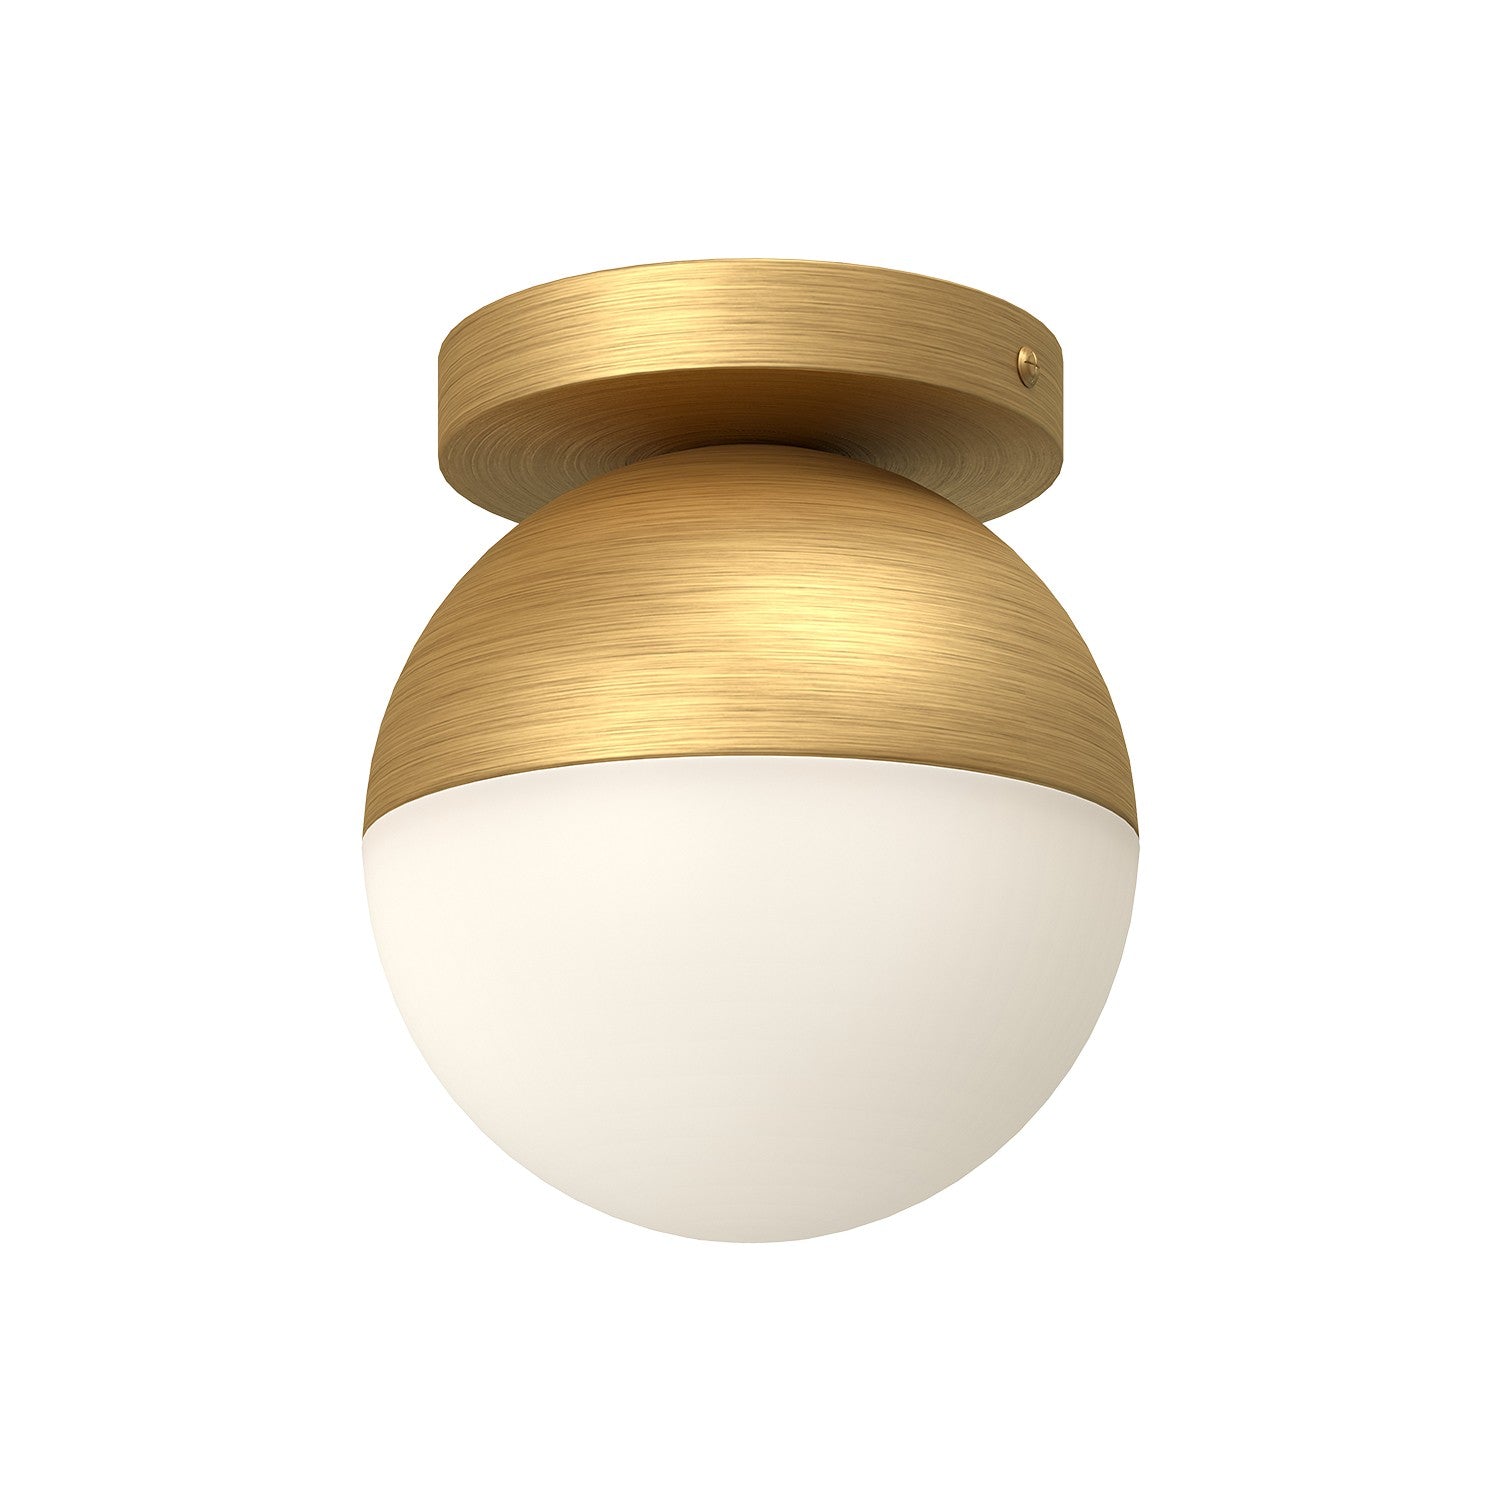 Kuzco Lighting - FM58306-BG/OP - One Light Flush Mount - Monae - Black/Opal Glass/Brushed Gold/Opal Glass